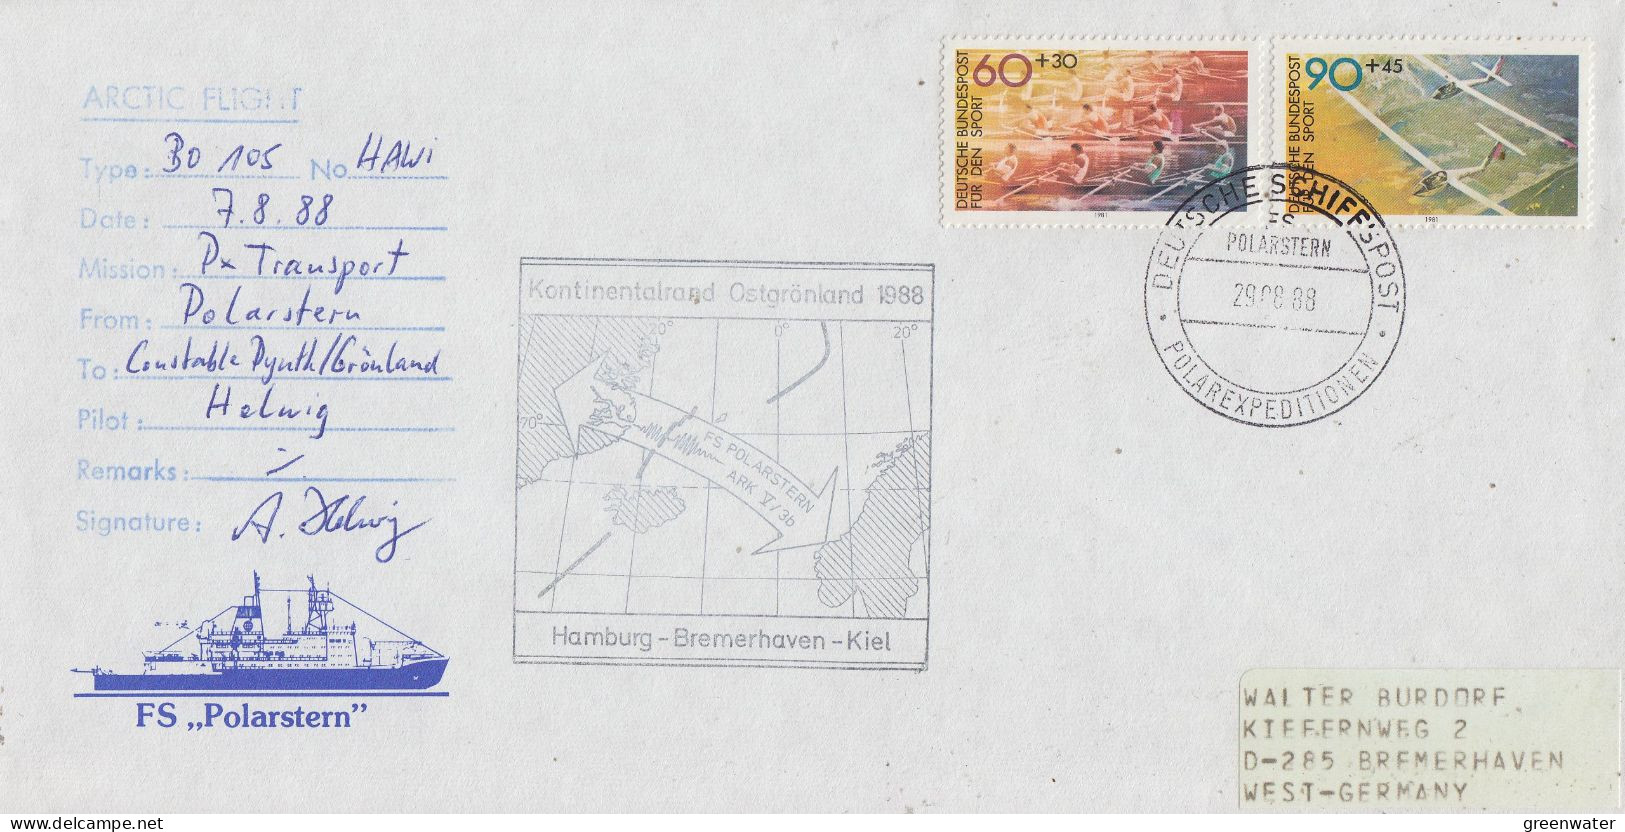 Germany Heli Flight From Polarstern To Constable Dynth (px Transporrt) 7.8.1988 (AR151) - Polar Flights